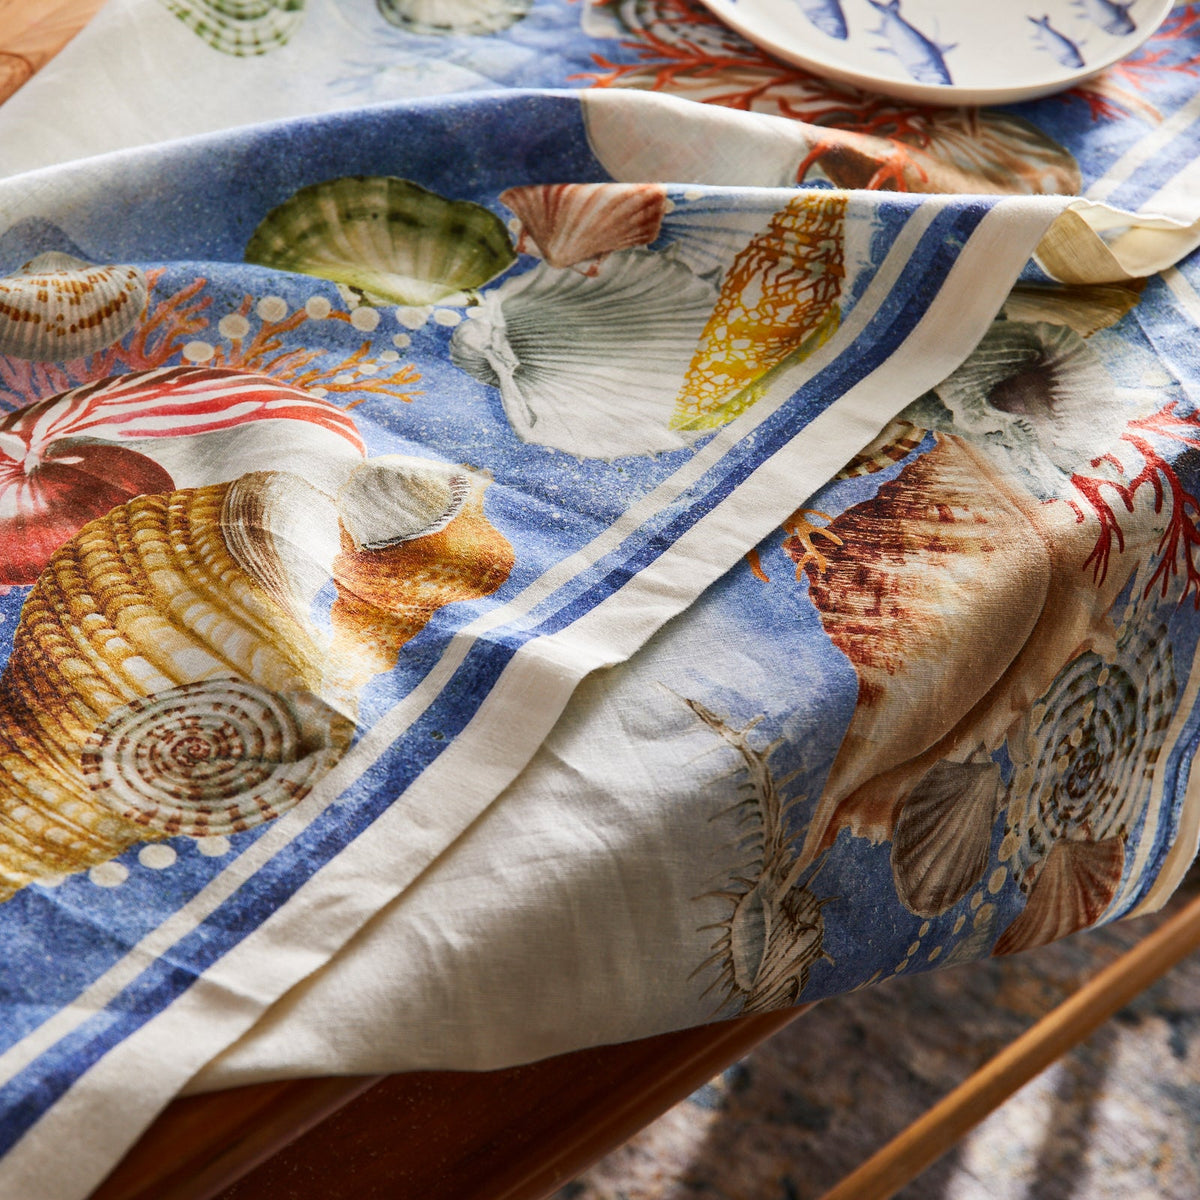 A Sanibel Linen tablecloth adorned with sea shells.